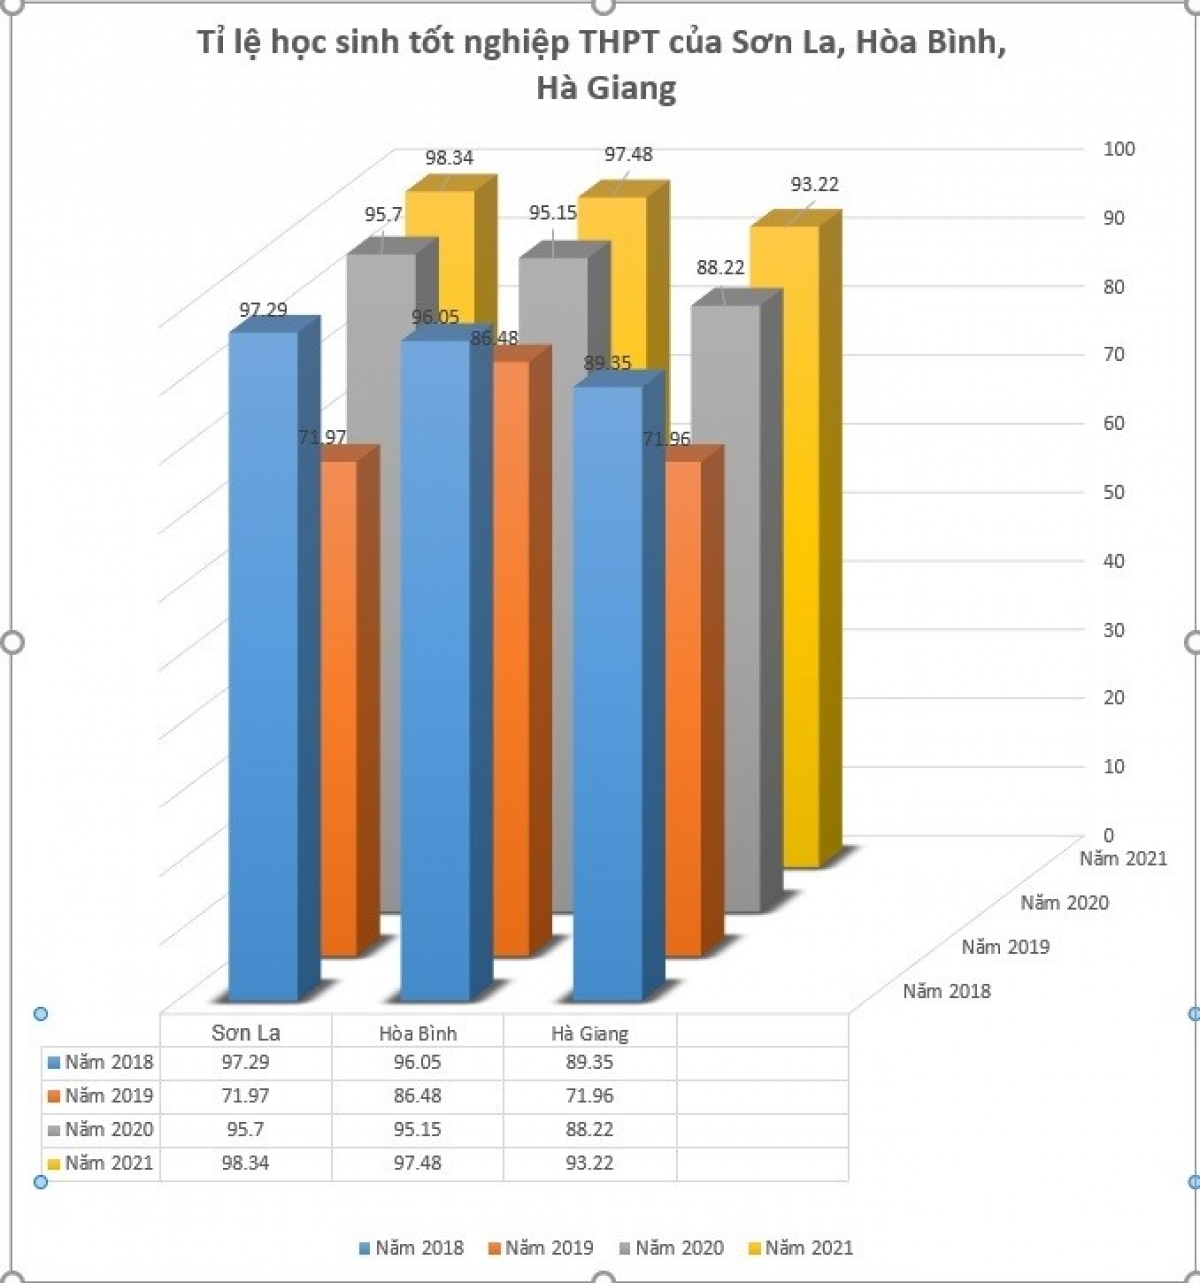 Bảng so sánh tỉ lệ tốt nghiệp THPT 4 năm qua của Sơn La, Hòa Bình, Hà Giang. (Ảnh: Đặng Chung, laodong.vn)